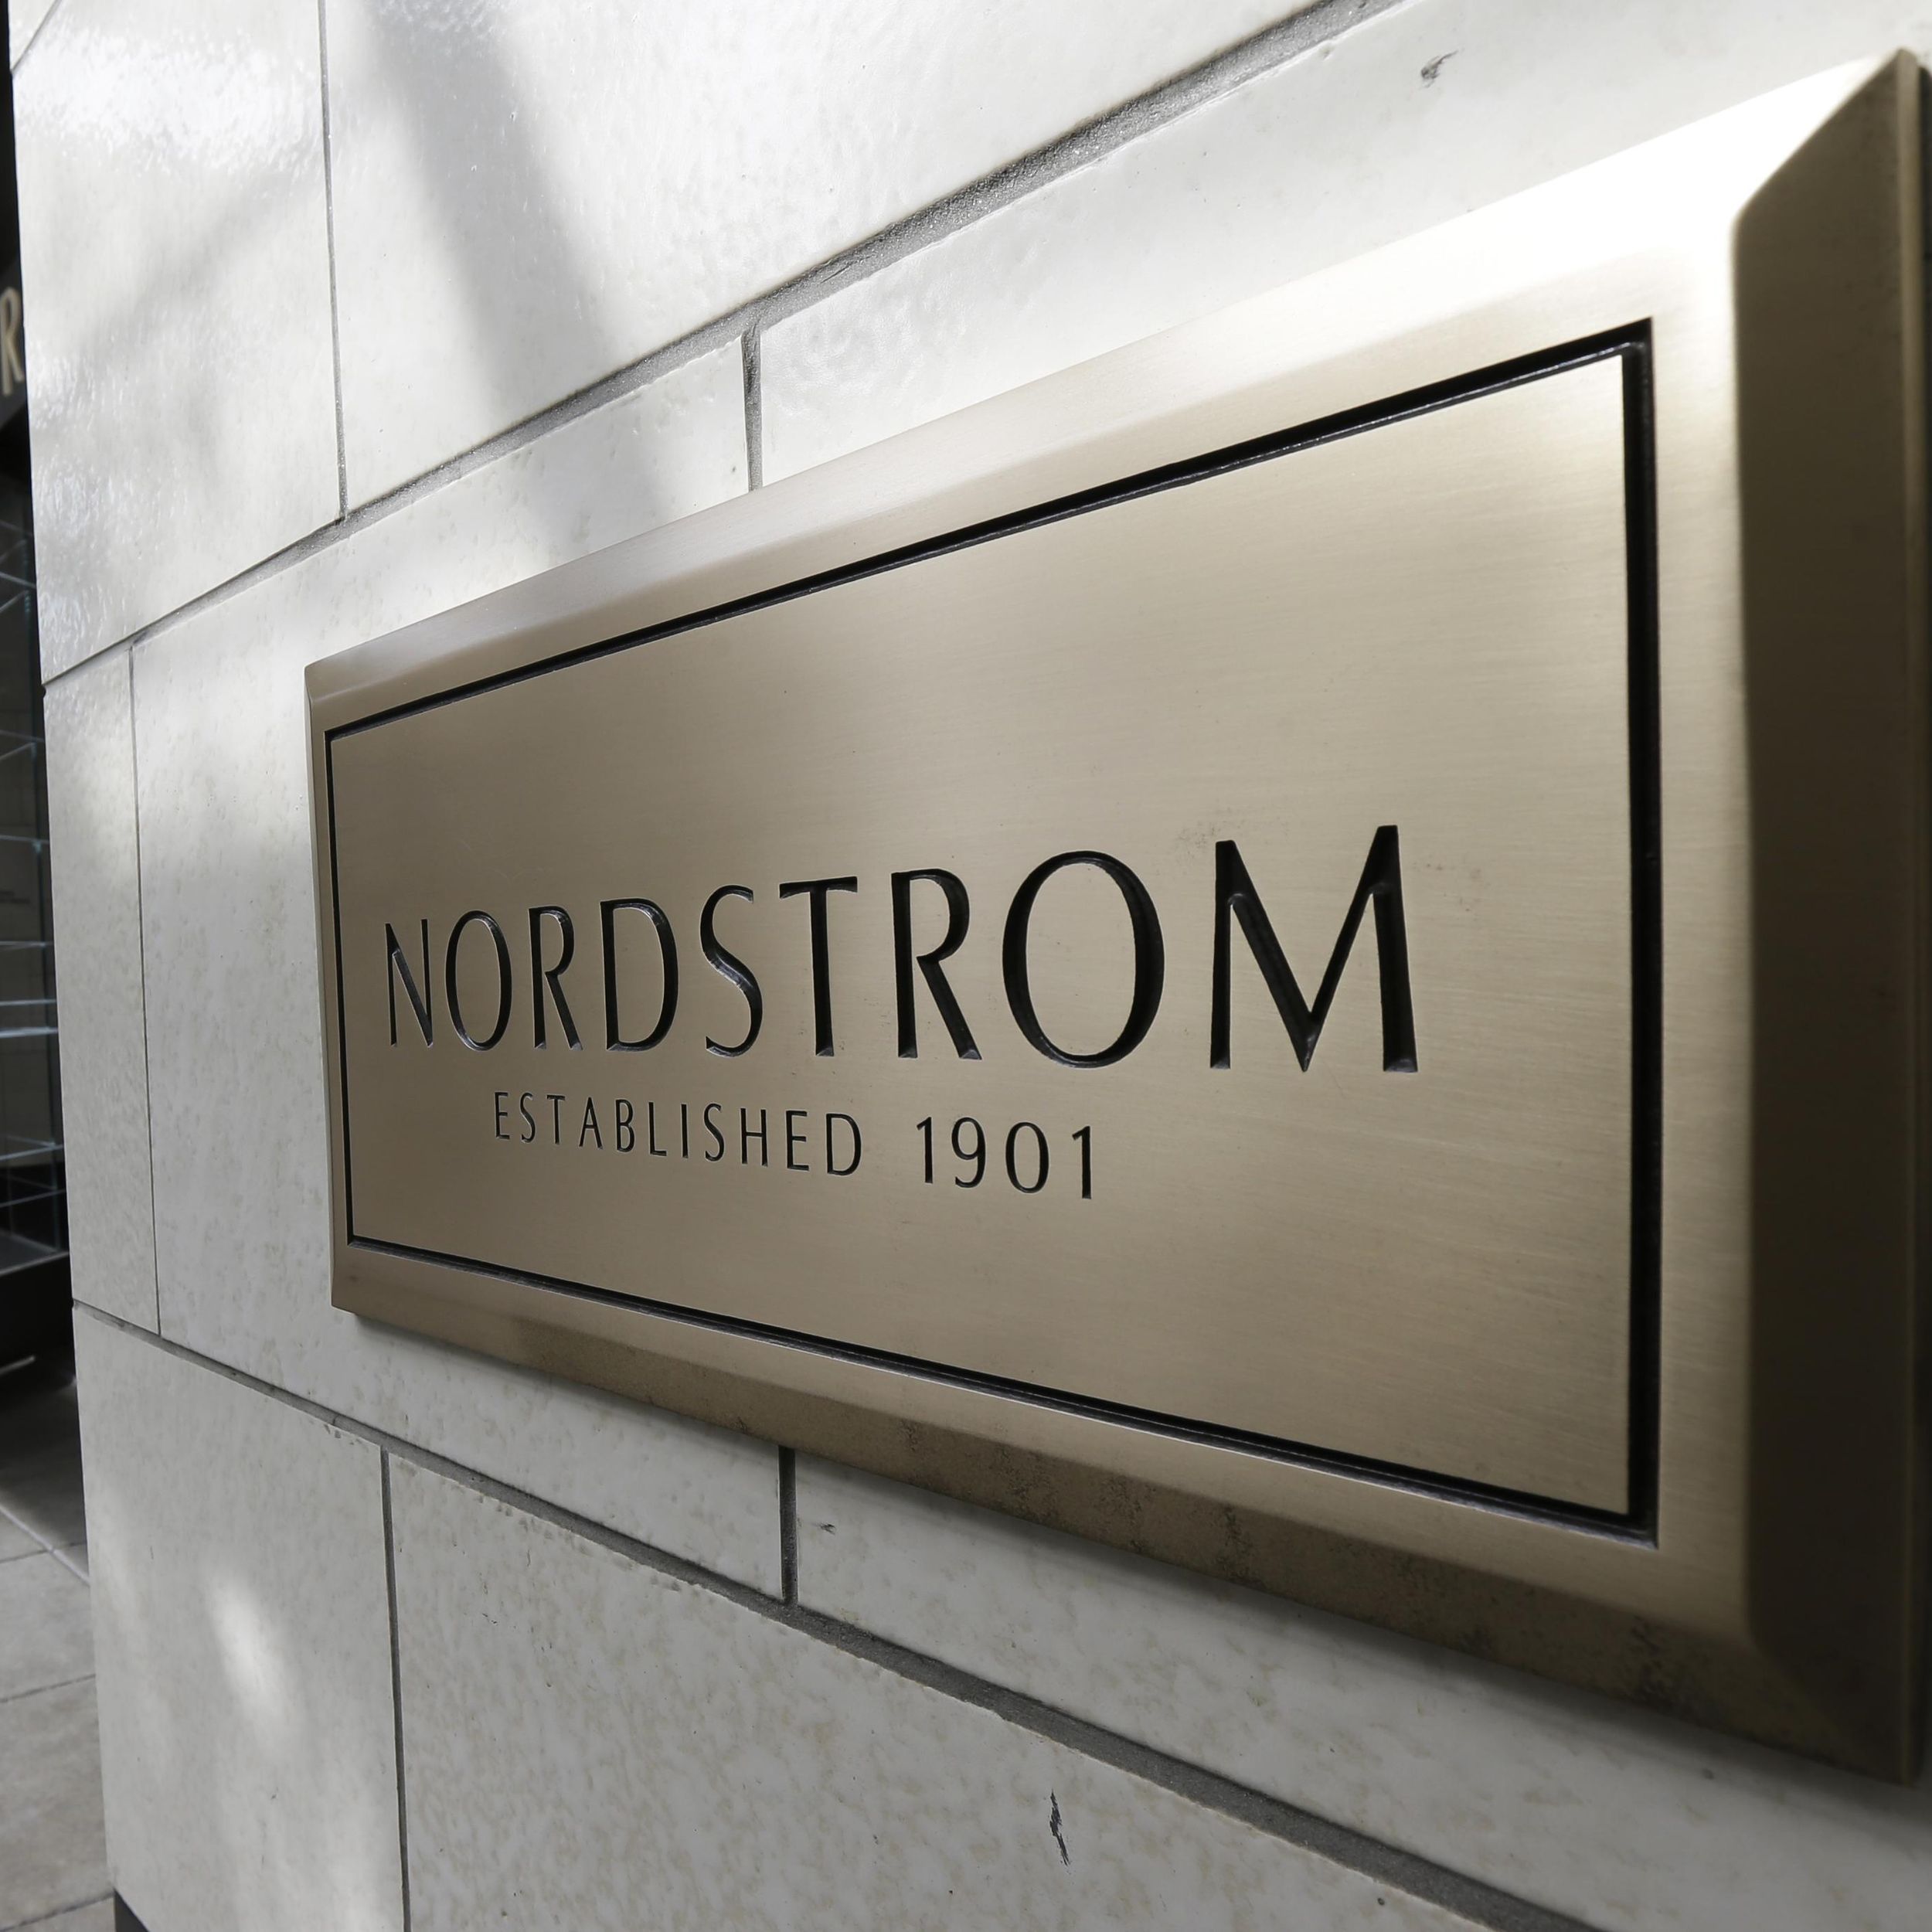 Nordstrom Enters the Resale Market